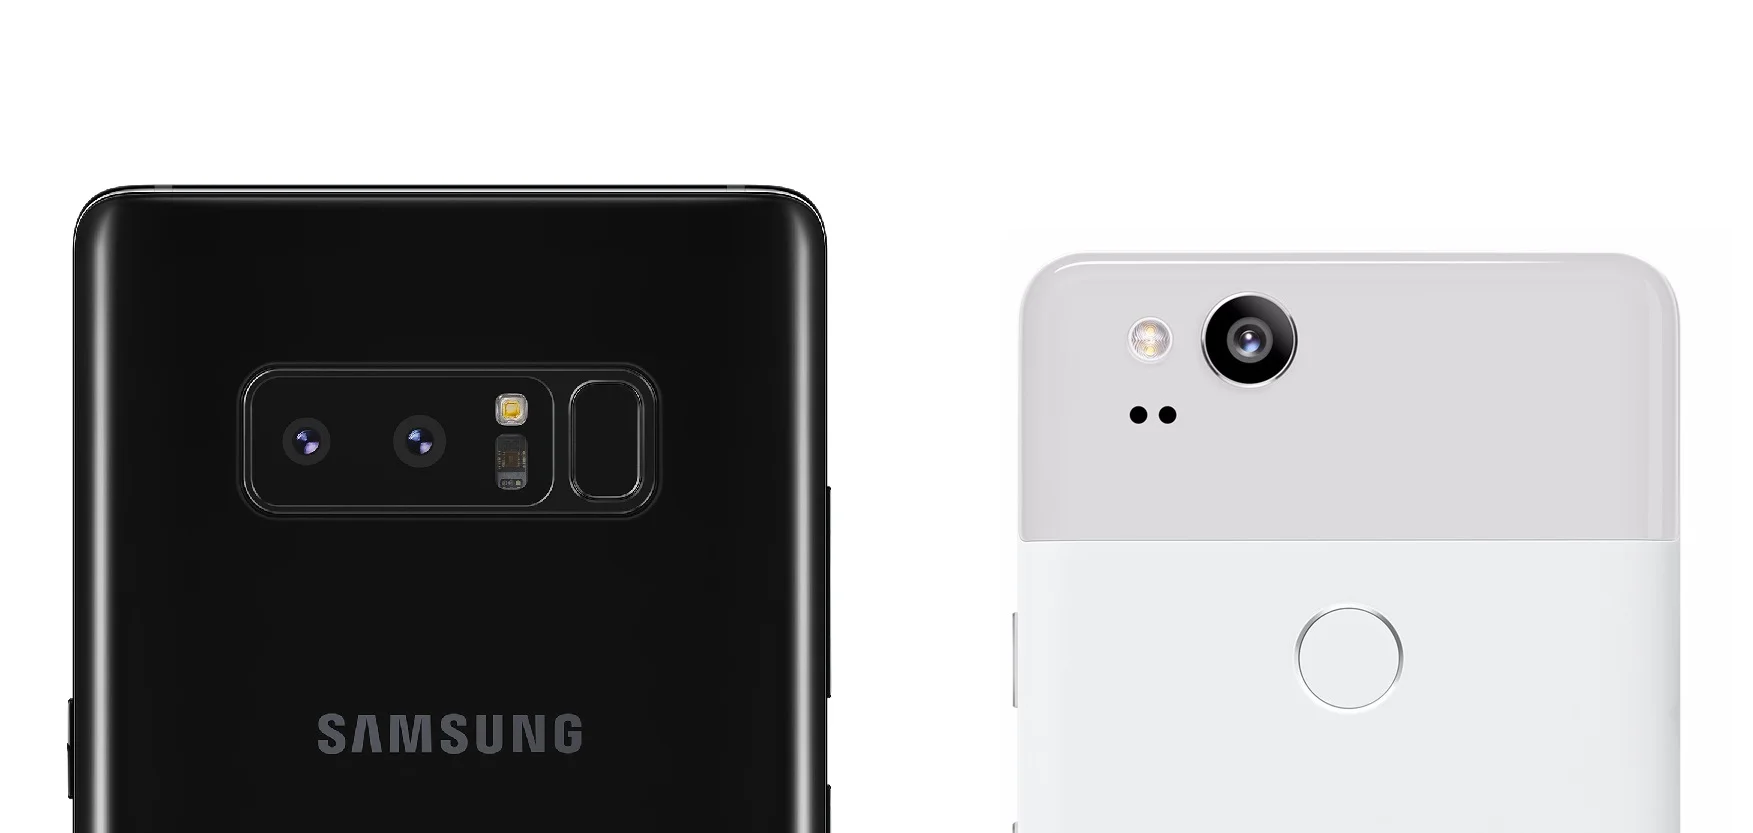 На рынке флагманских Android-смартфонов идет постоянная гонка за звание лучшего камерофона, и сейчас в ней двое лидеров: Google Pixel 2 и Galaxy Note8. Мы сравнили снимки с обоих аппаратов в равных условиях, и предлагаем вам самим определить победителя.